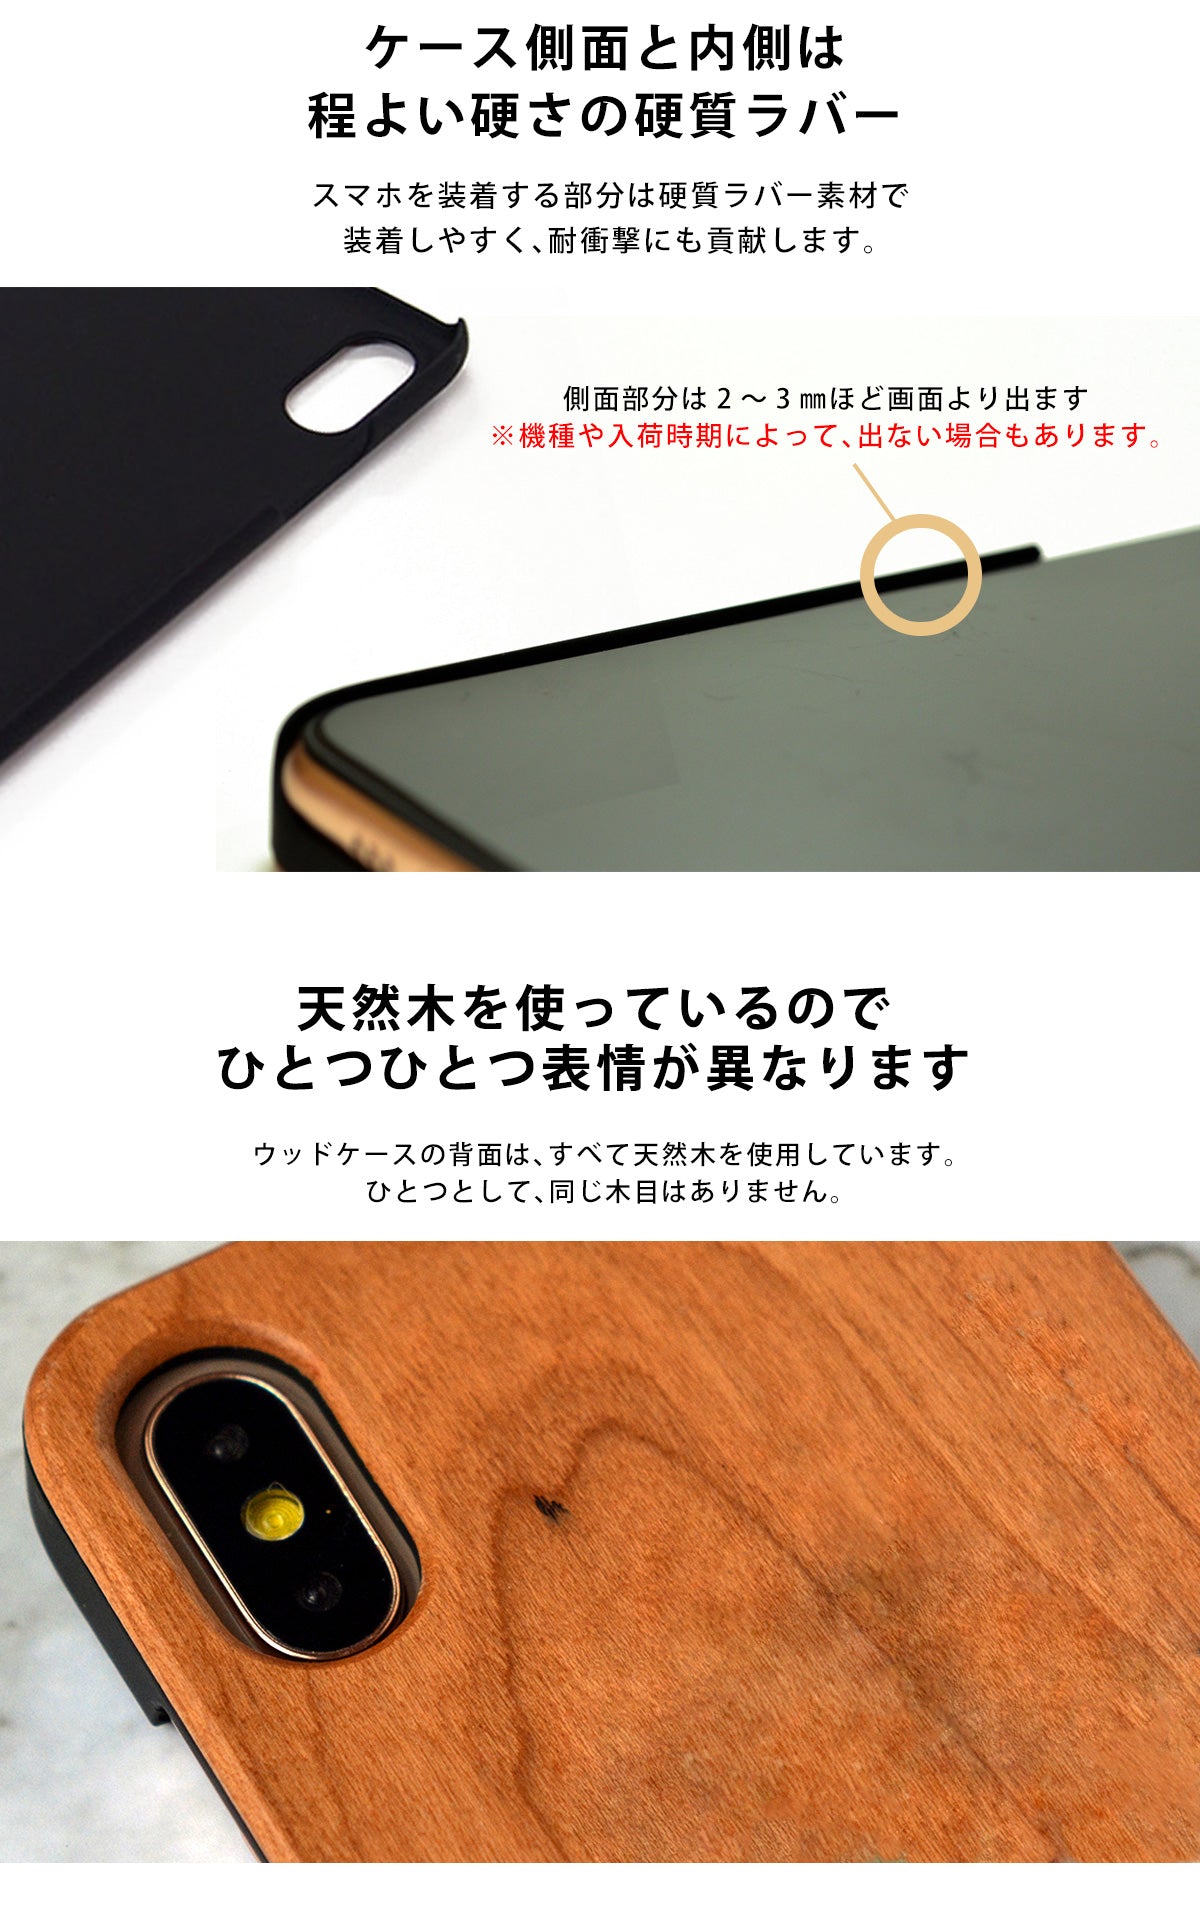 ウッド 木製 竹製 天然木 iPhone Xperia ケース tr1401